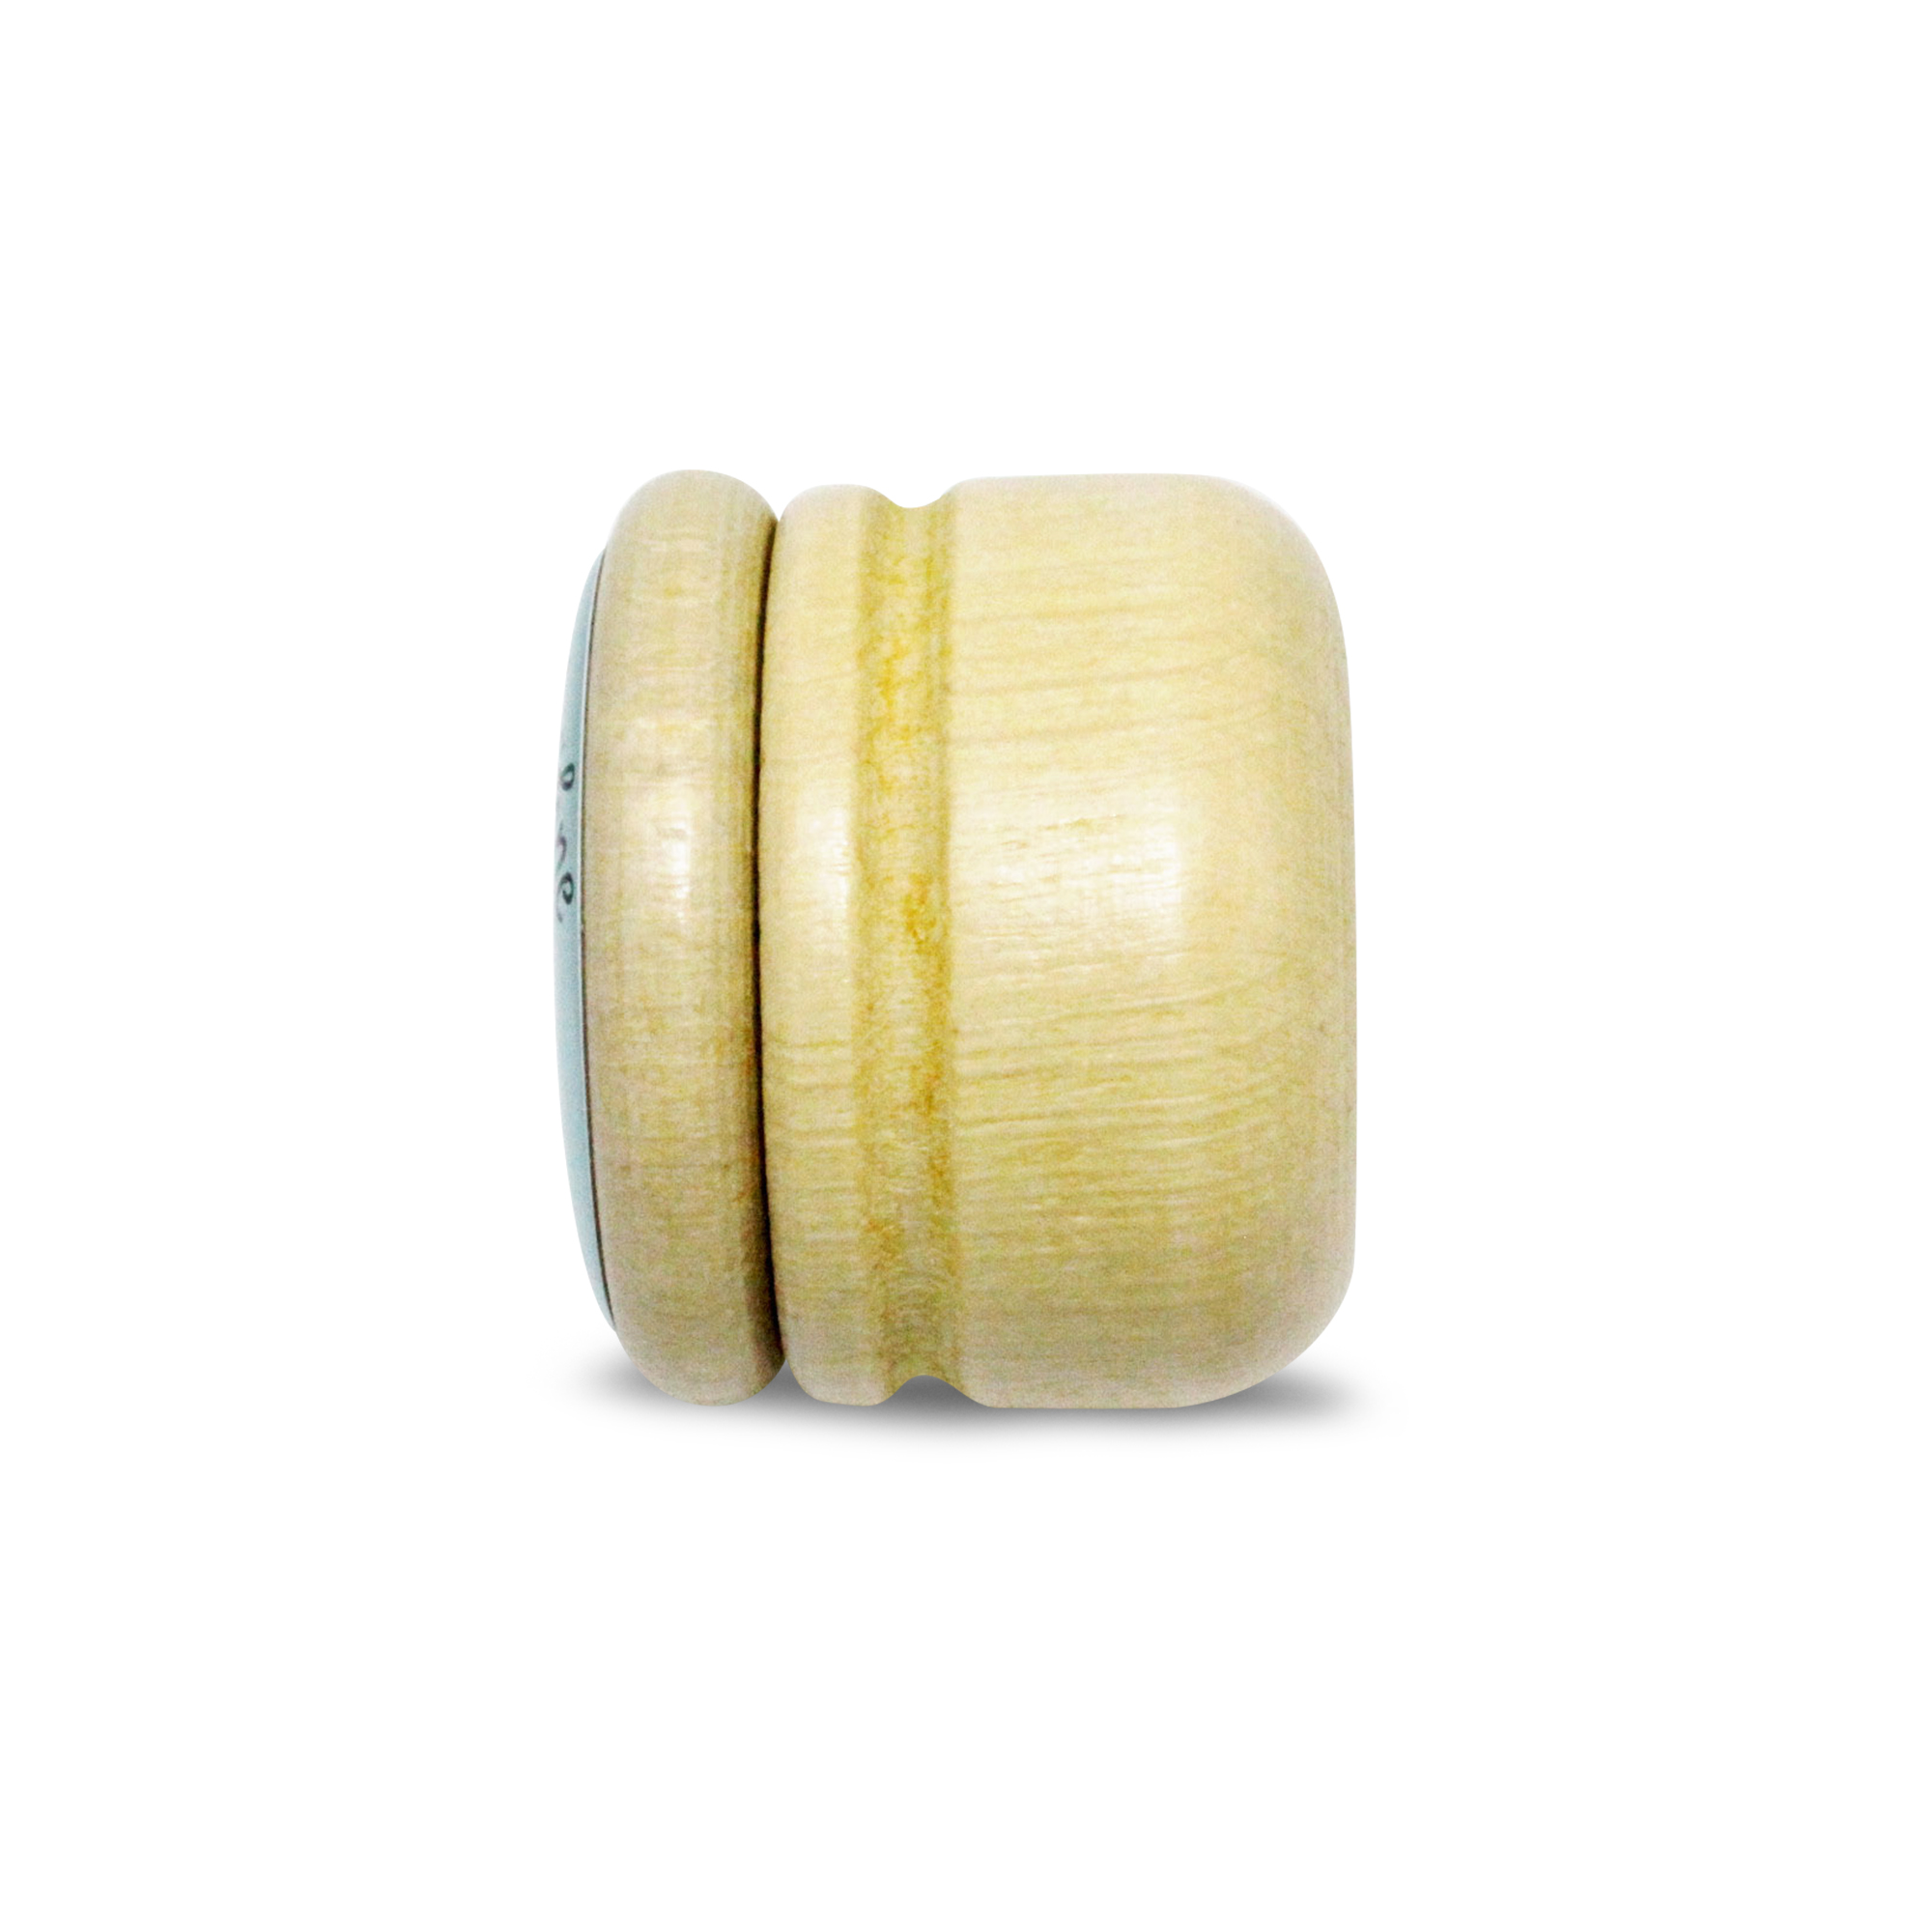 Milchzahndose Robbe Zahndose Milchzähne Bilderdose aus Holz mit Drehverschluss 44 mm ( Robbe )- 7020